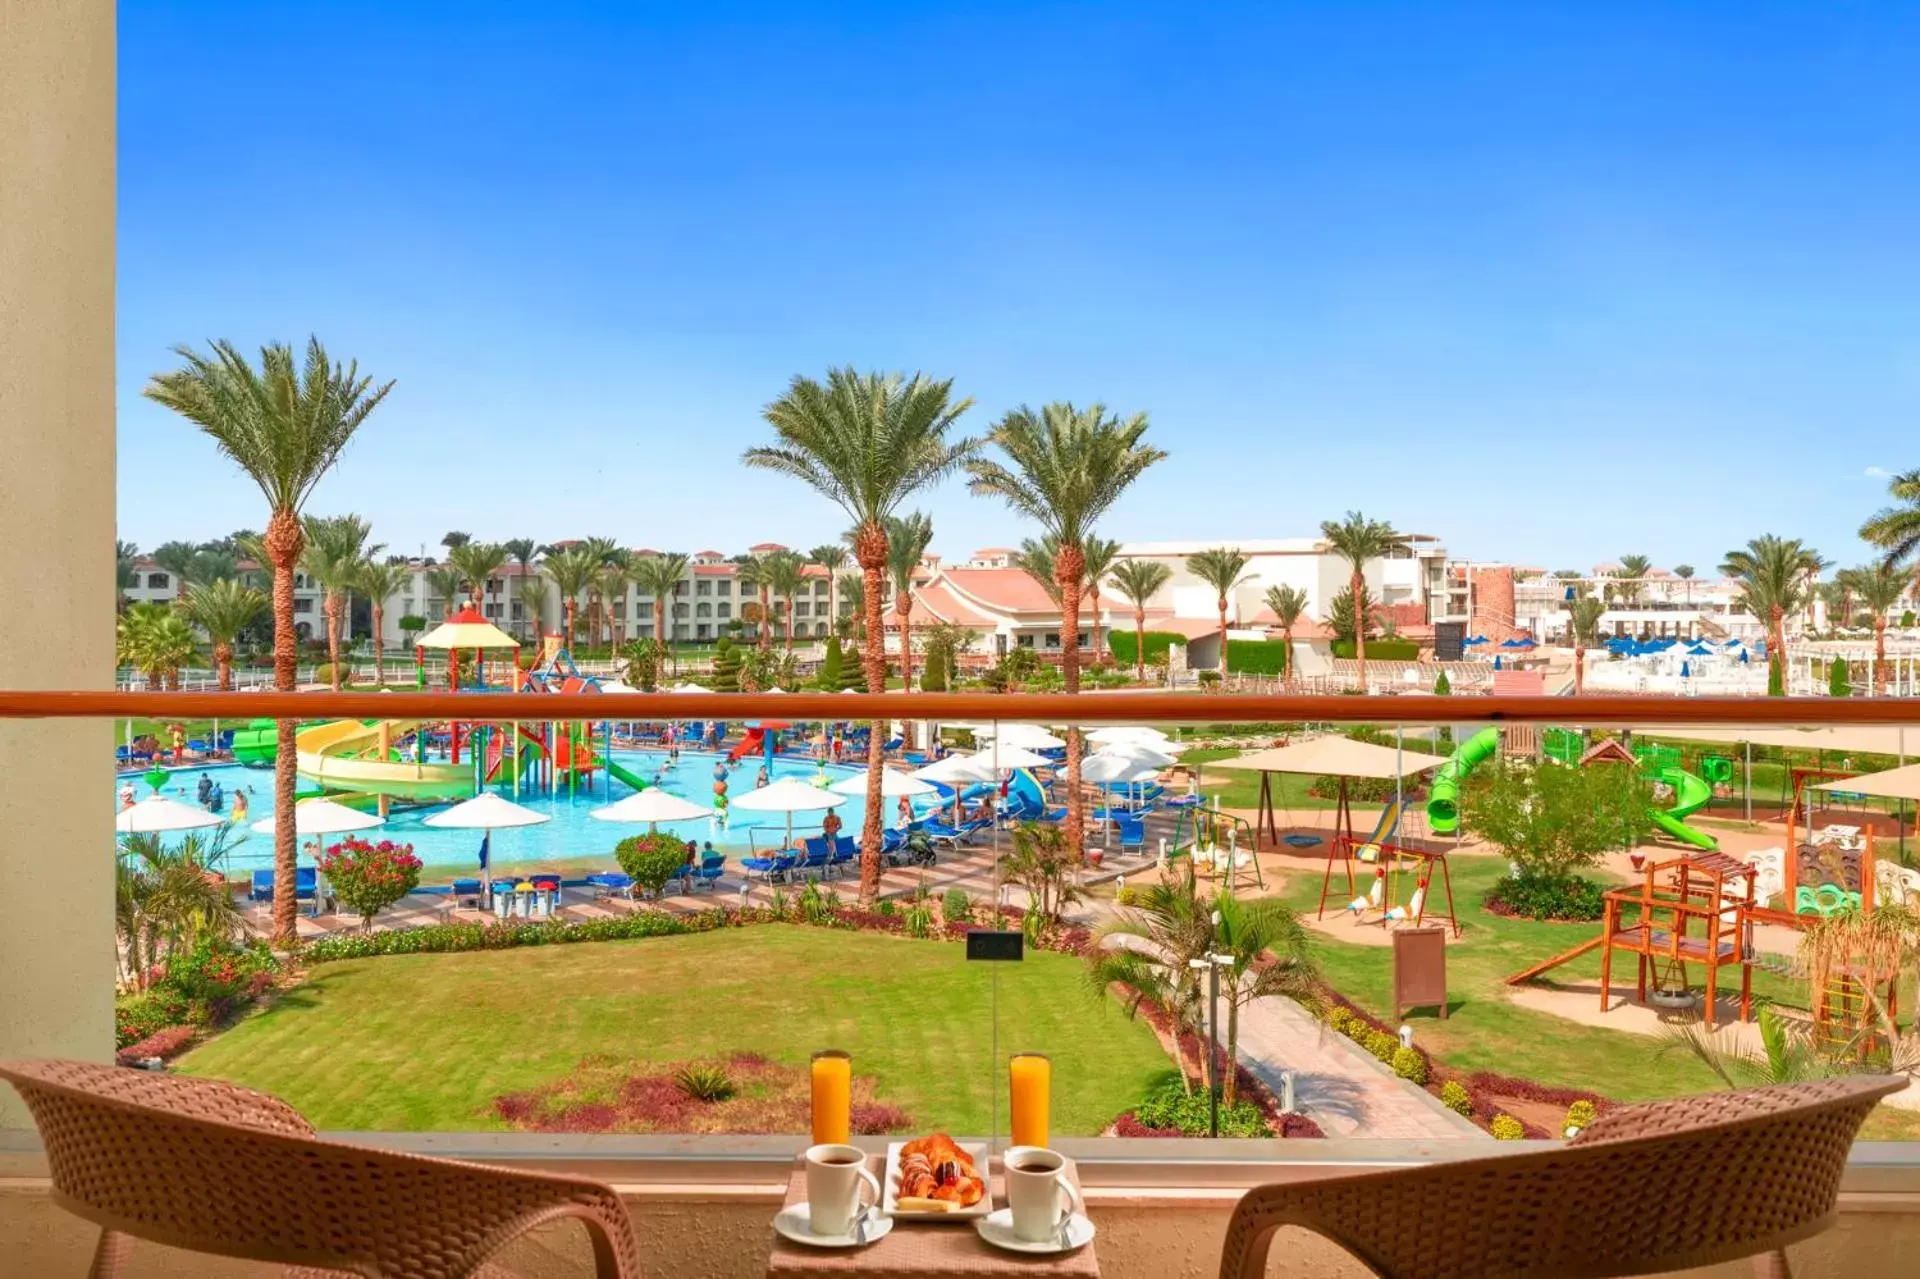 Pool View in Pickalbatros Dana Beach Resort - Hurghada